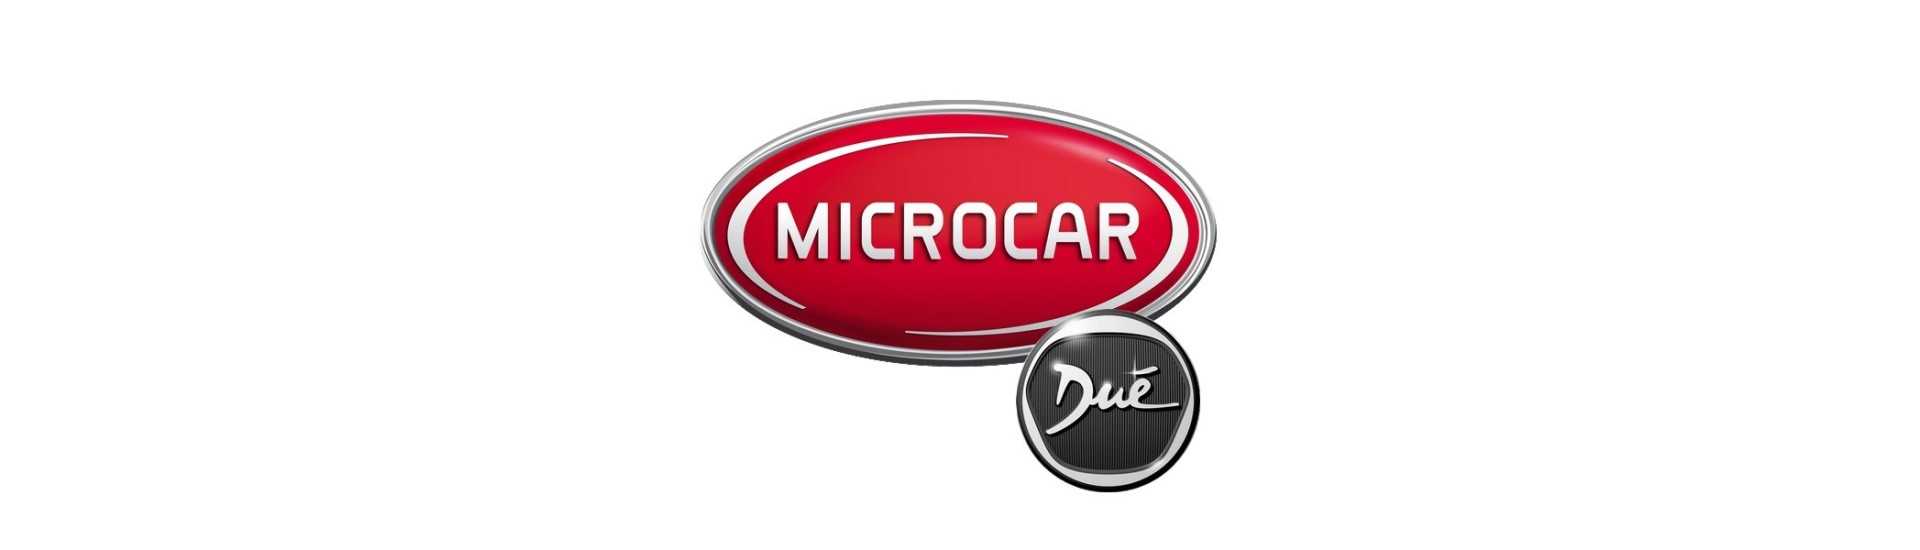 Bryt till bästa pris för bil utan tillstånd Microcar Dué